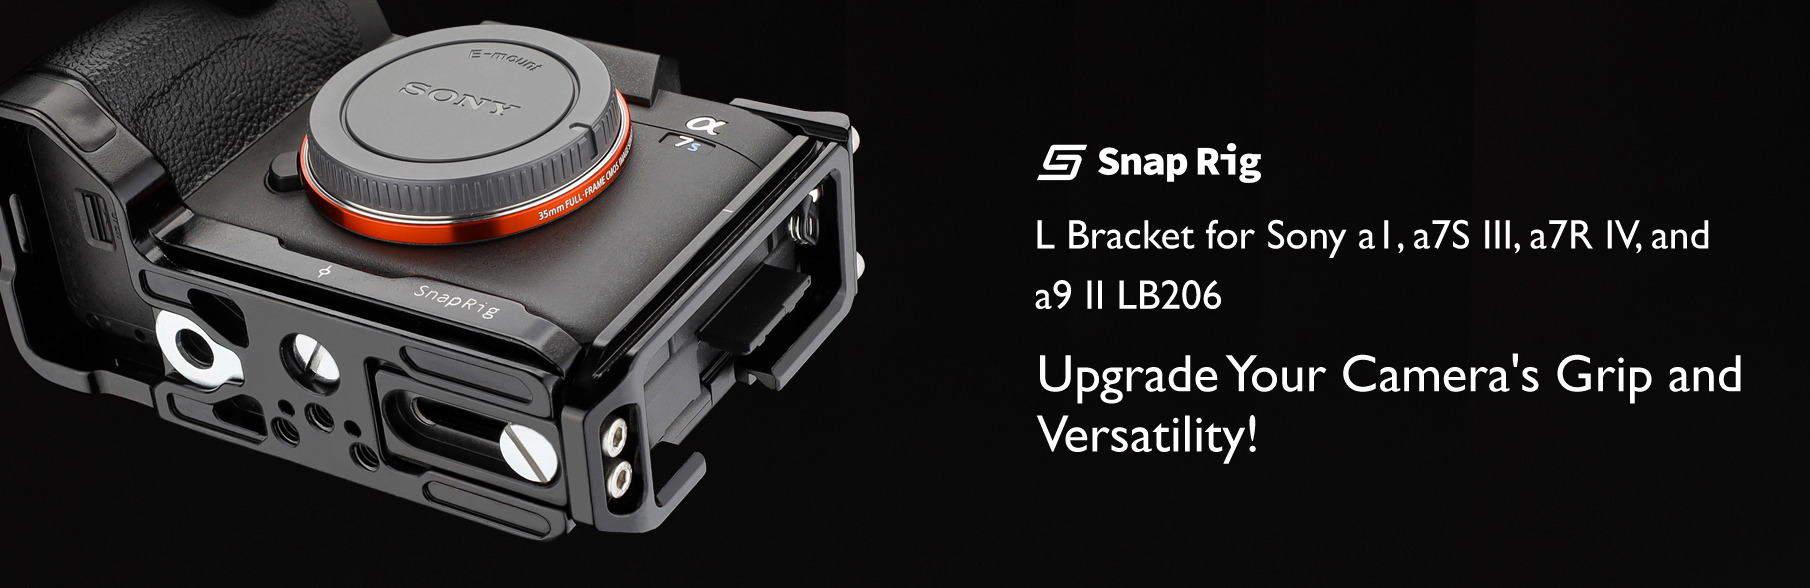 Proaim SnapRig L Bracket for Sony a1, a7S III, a7R IV, and a9 II LB206